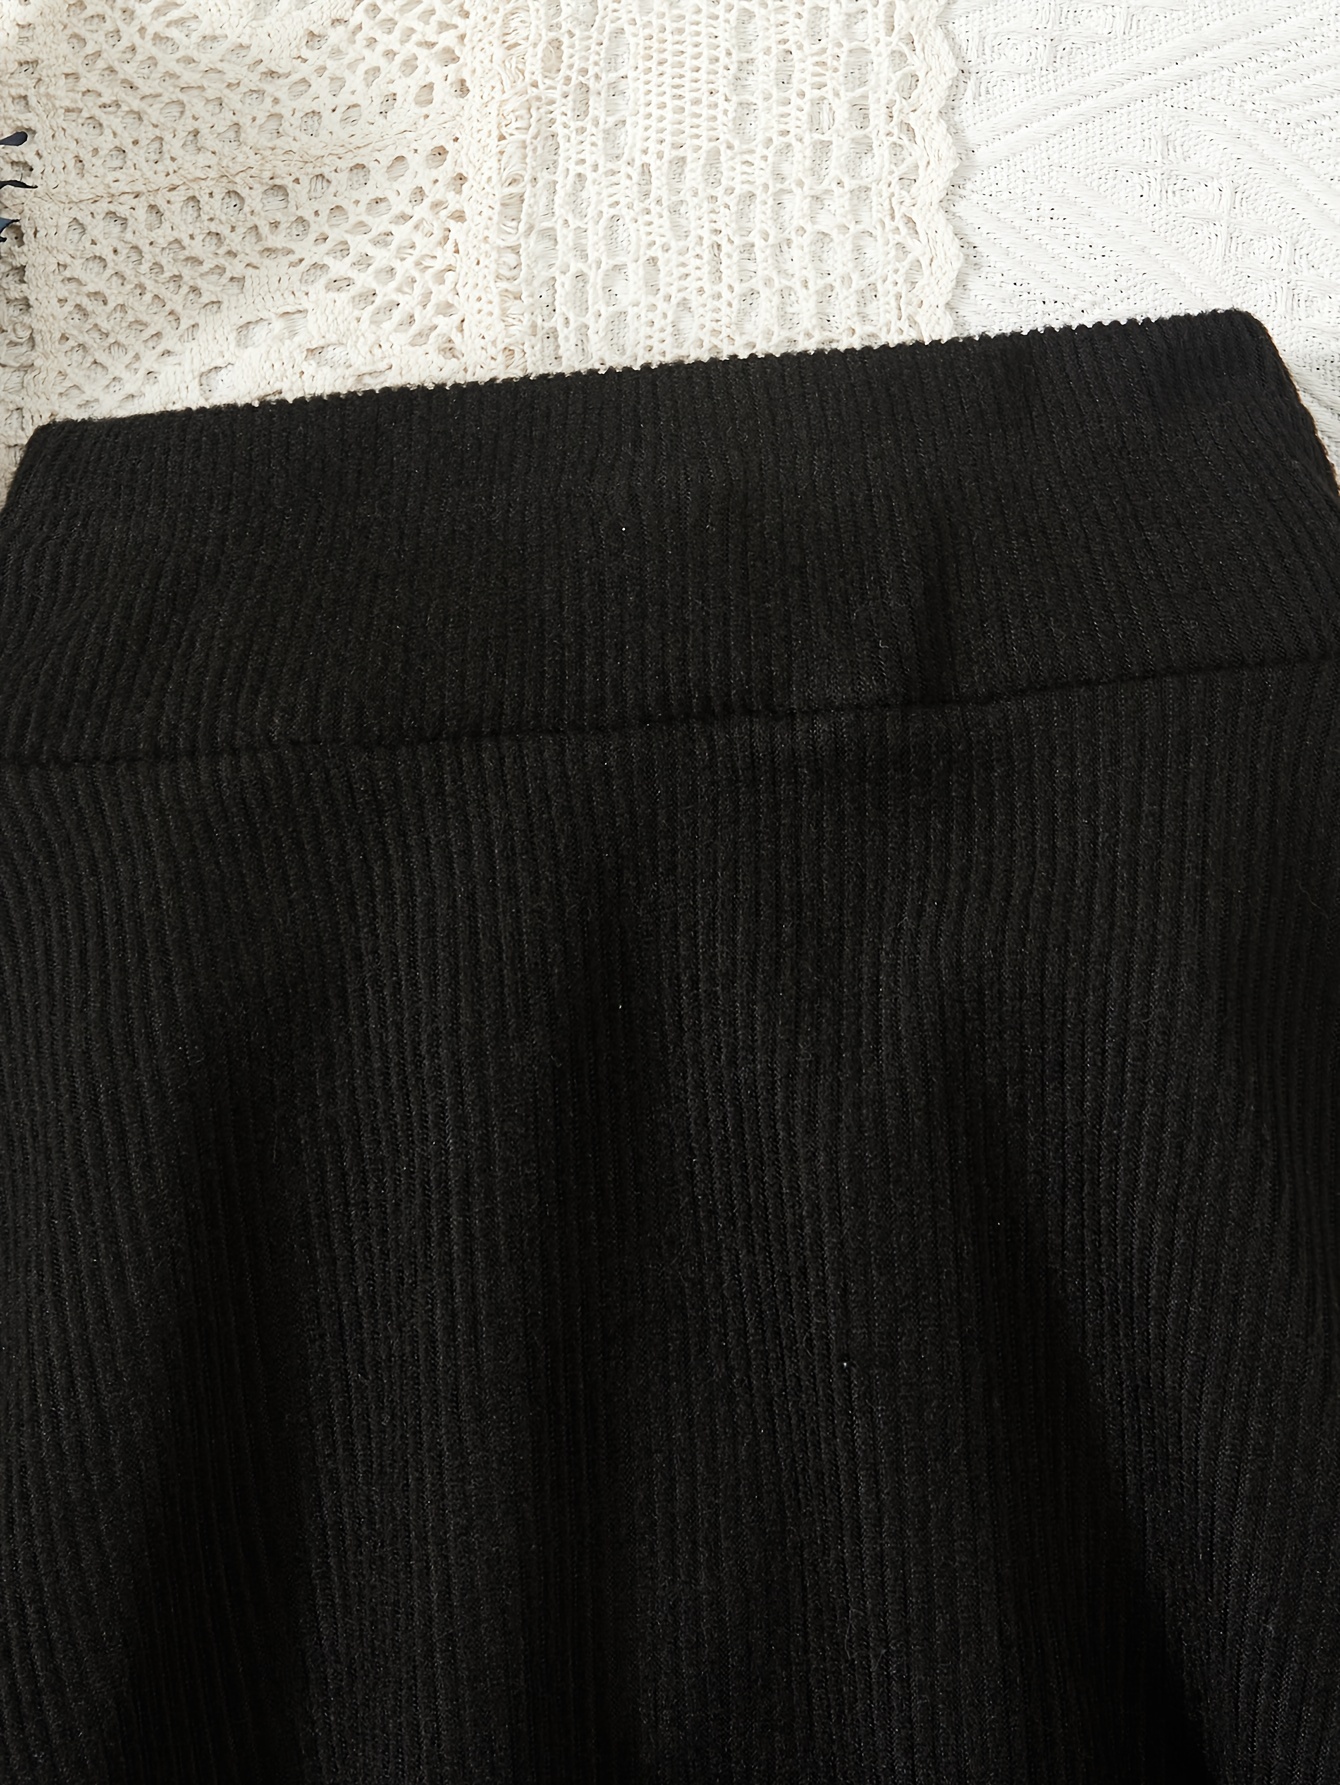 ZARA Knit Legging/ Skirt Combo - Small  Skirt leggings, Knit leggings, Zara  leggings